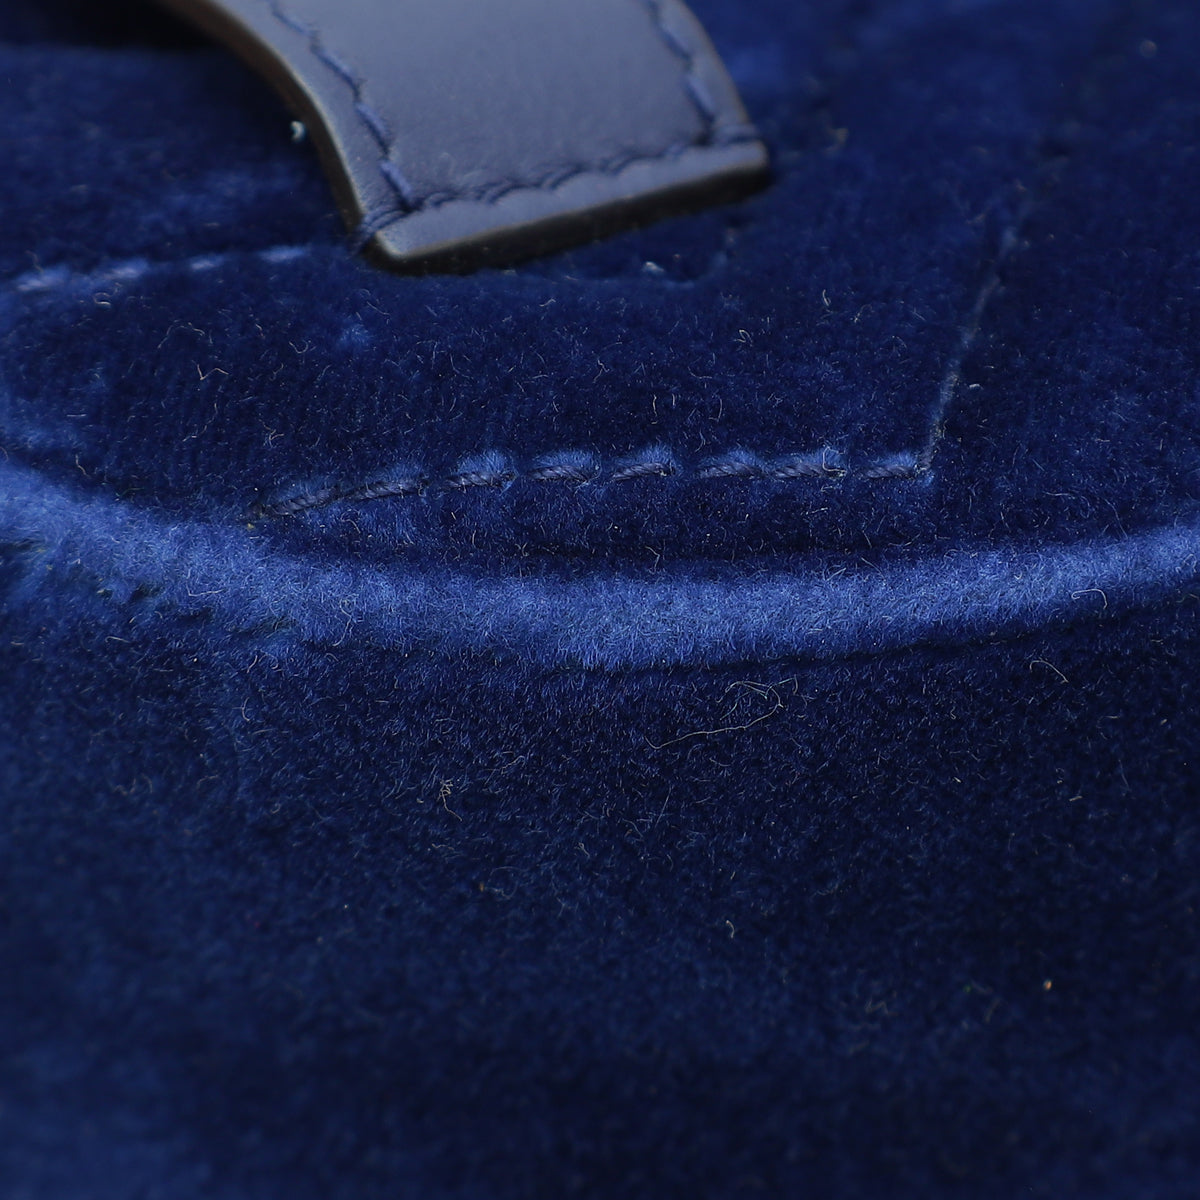 Gucci Navy Blue Velvet GG Marmont Mini Belt Bag